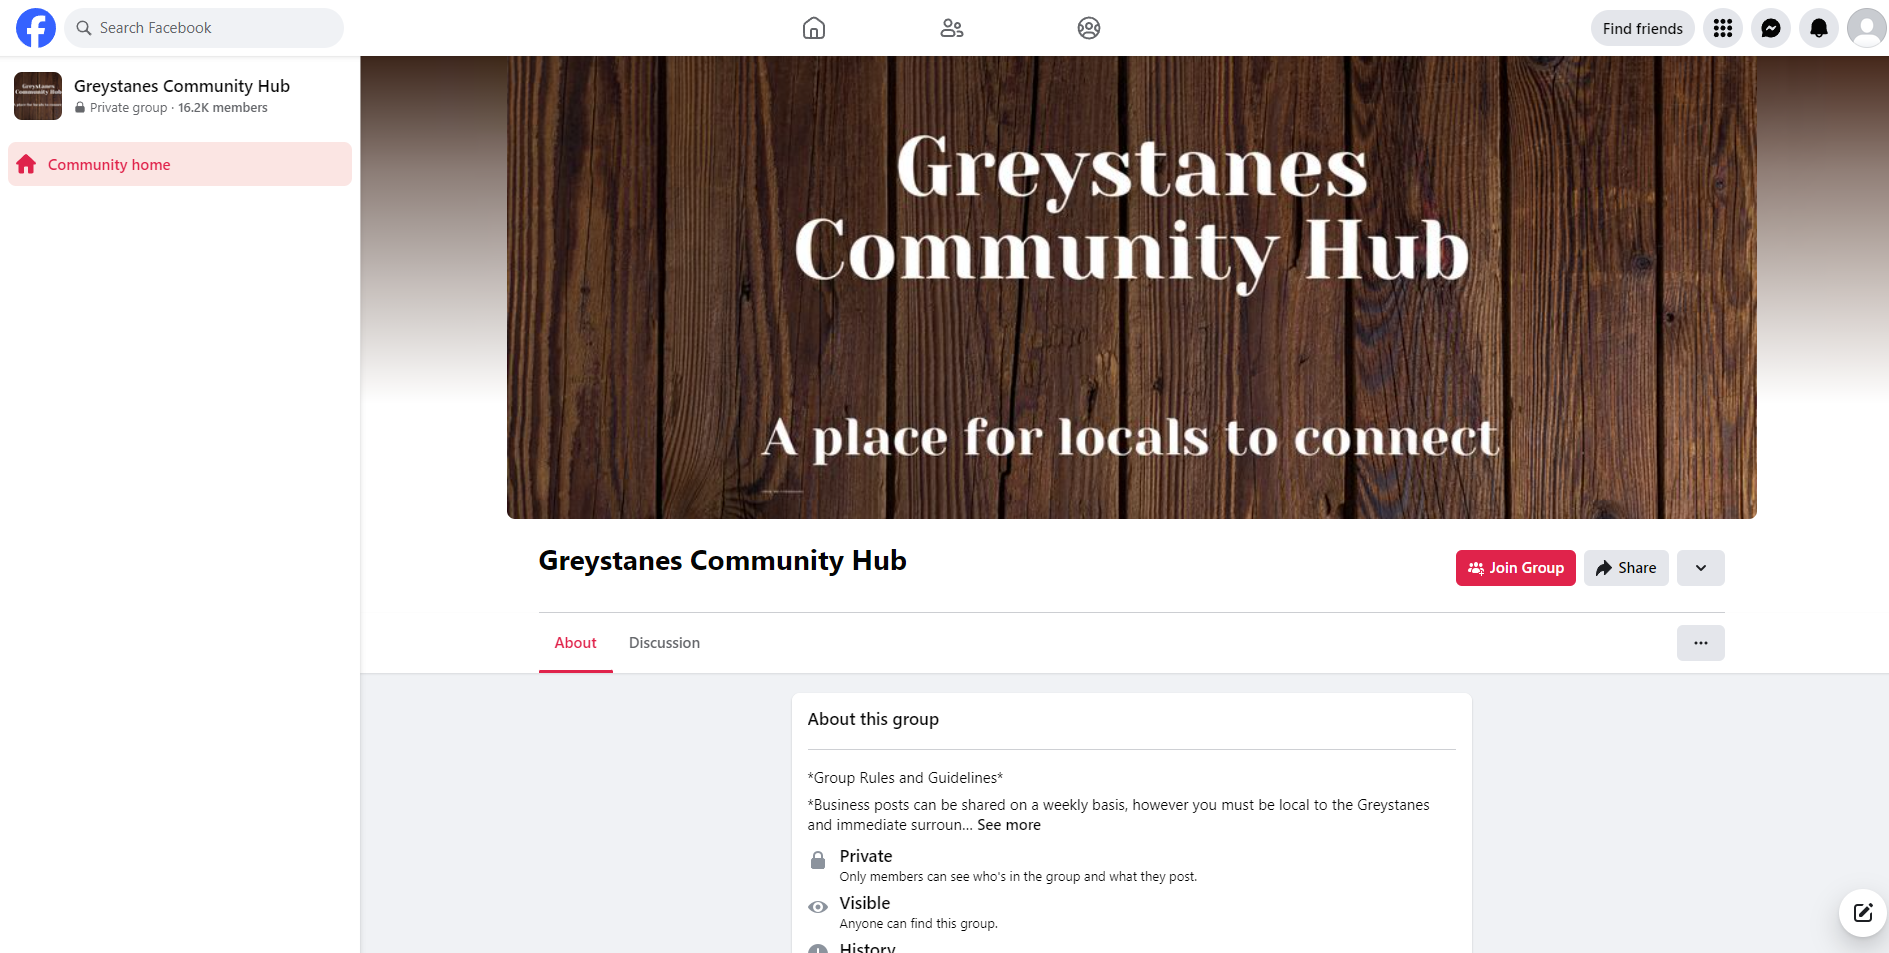 Greystanes Community Hub